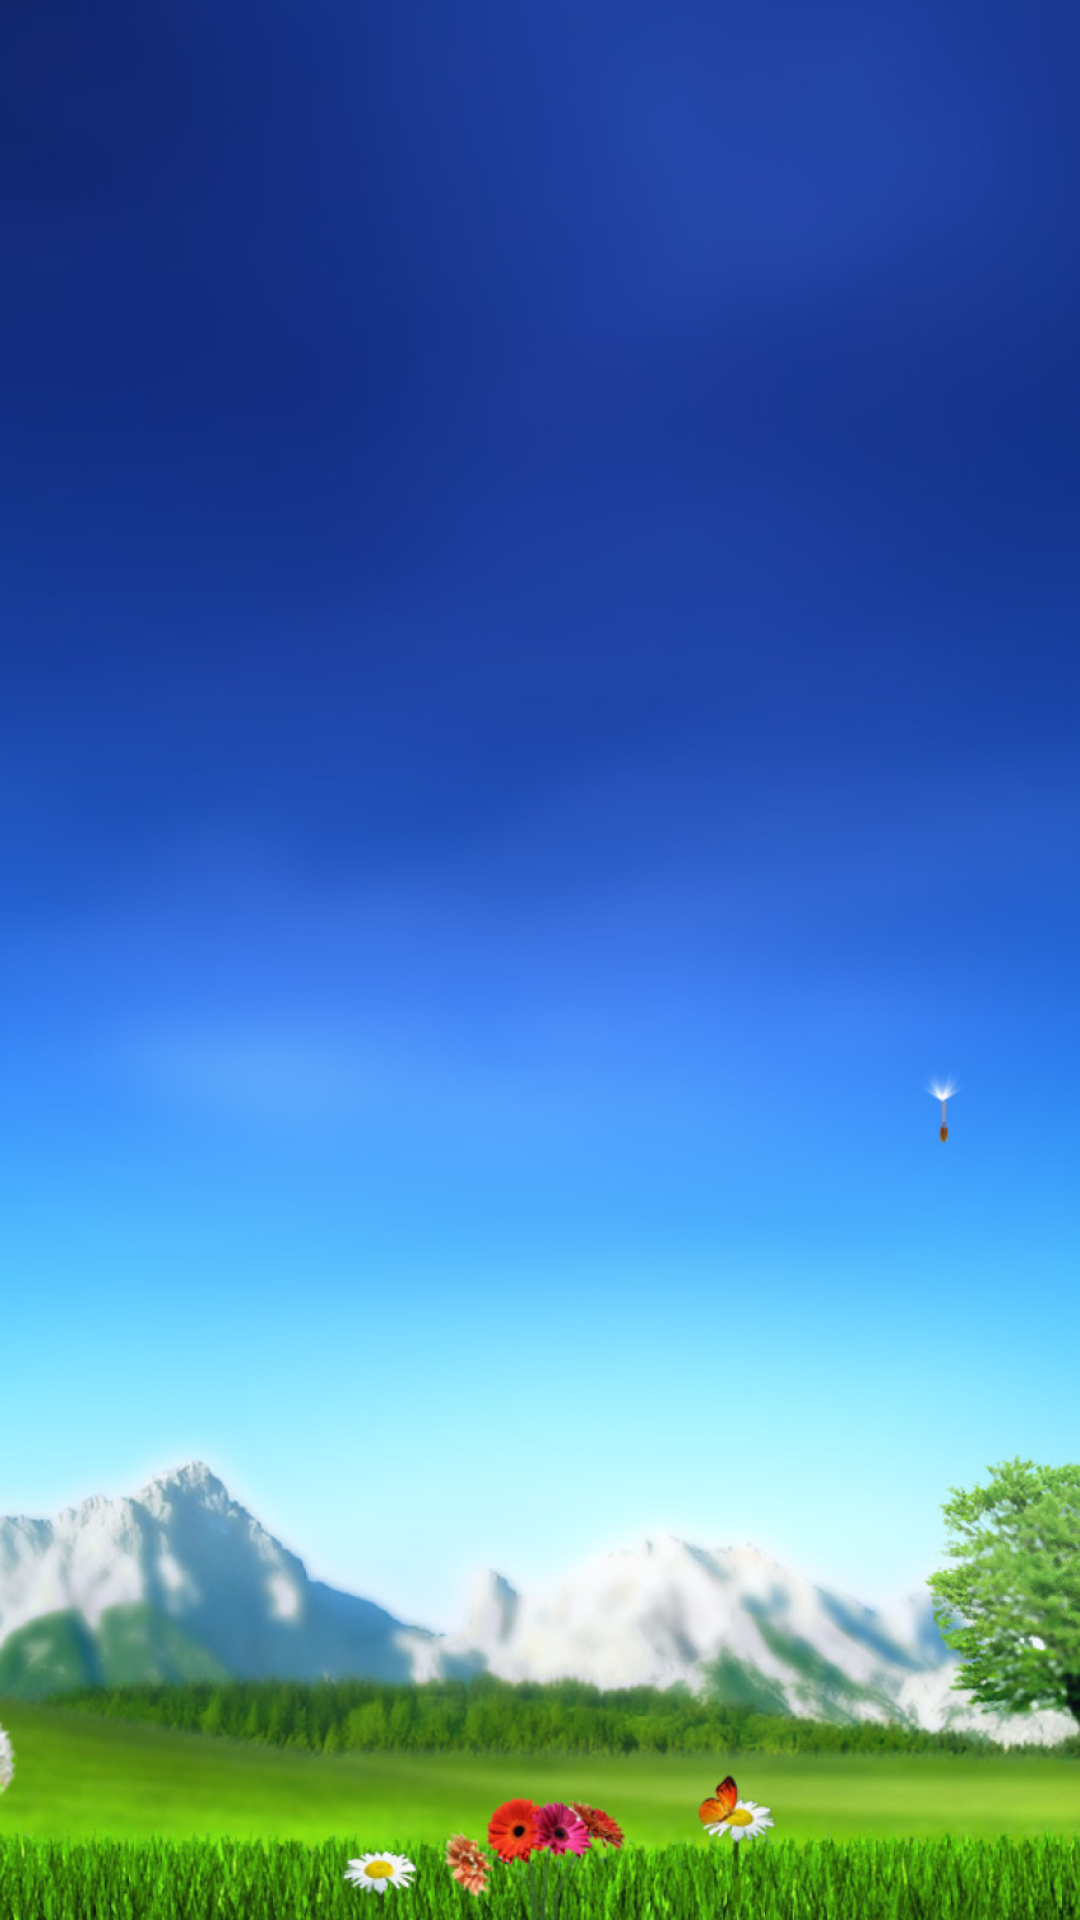 Das Nature Landscape Blue Sky Wallpaper 1080x1920